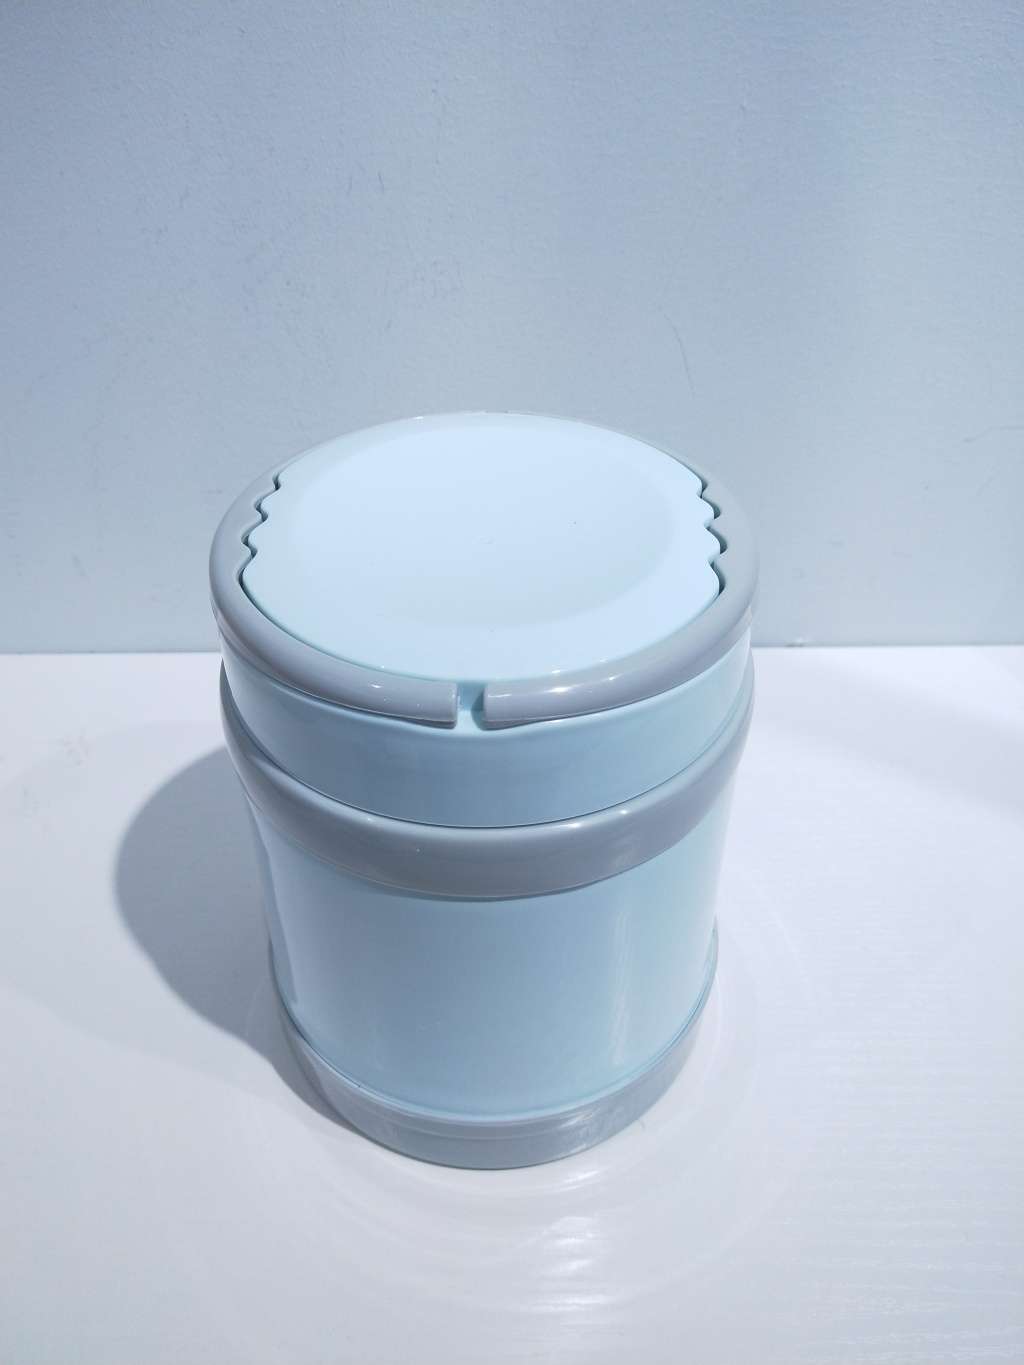 T07-8872不锈钢保温饭盒 便携式提手保温桶 便当盒塑料餐具详情图3